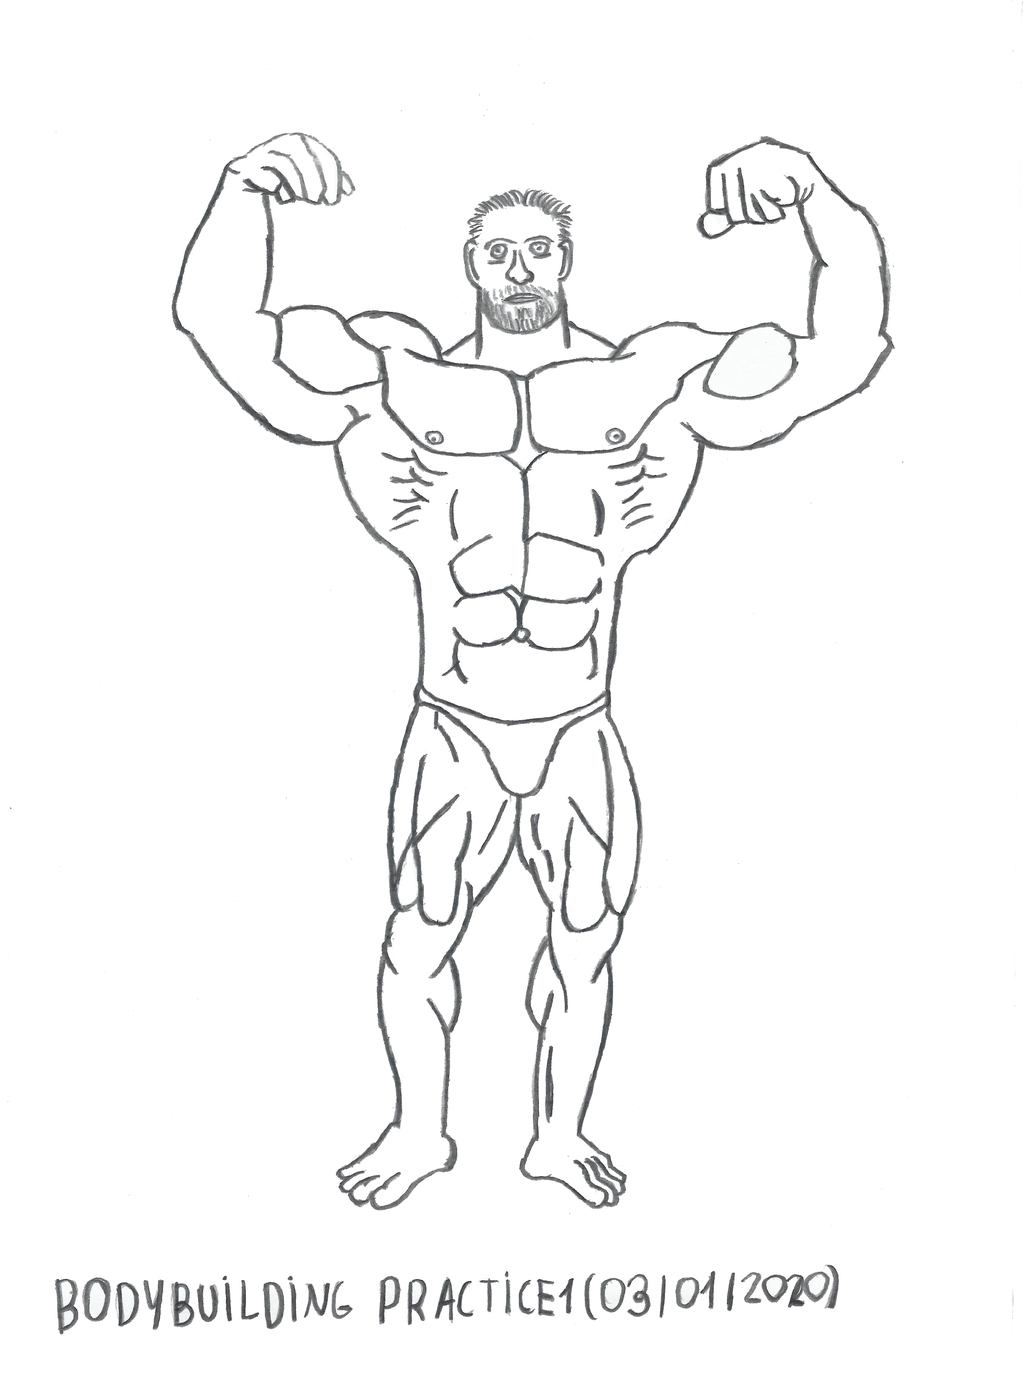 Bodybuilding - Anatomy Practice 1